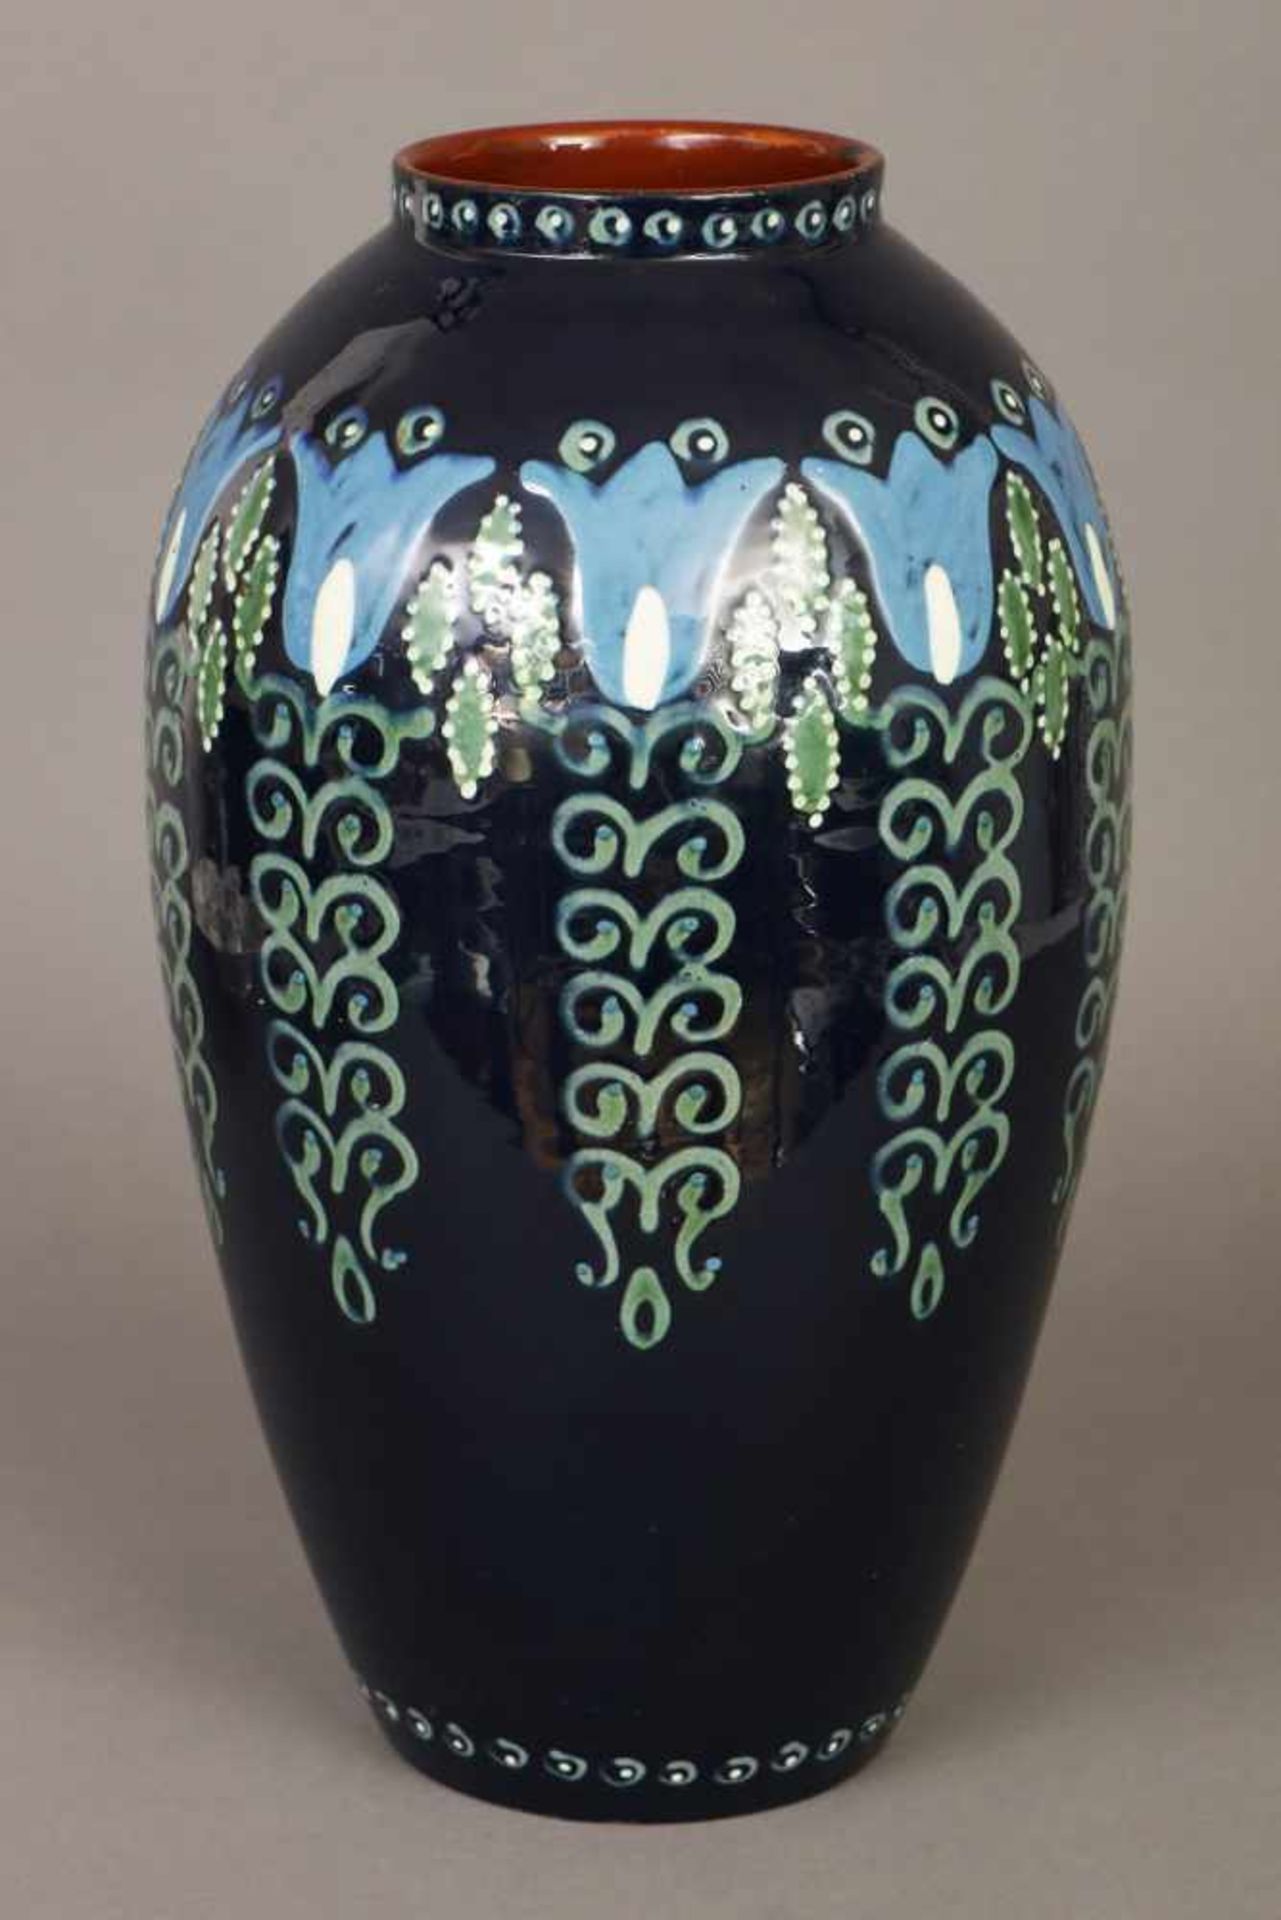 KARLSRUHER MAJOLIKA Jugendstil-Vase1920er Jahre, Entwurf Alfred Kusche, Modell-Nr. 2202, roter